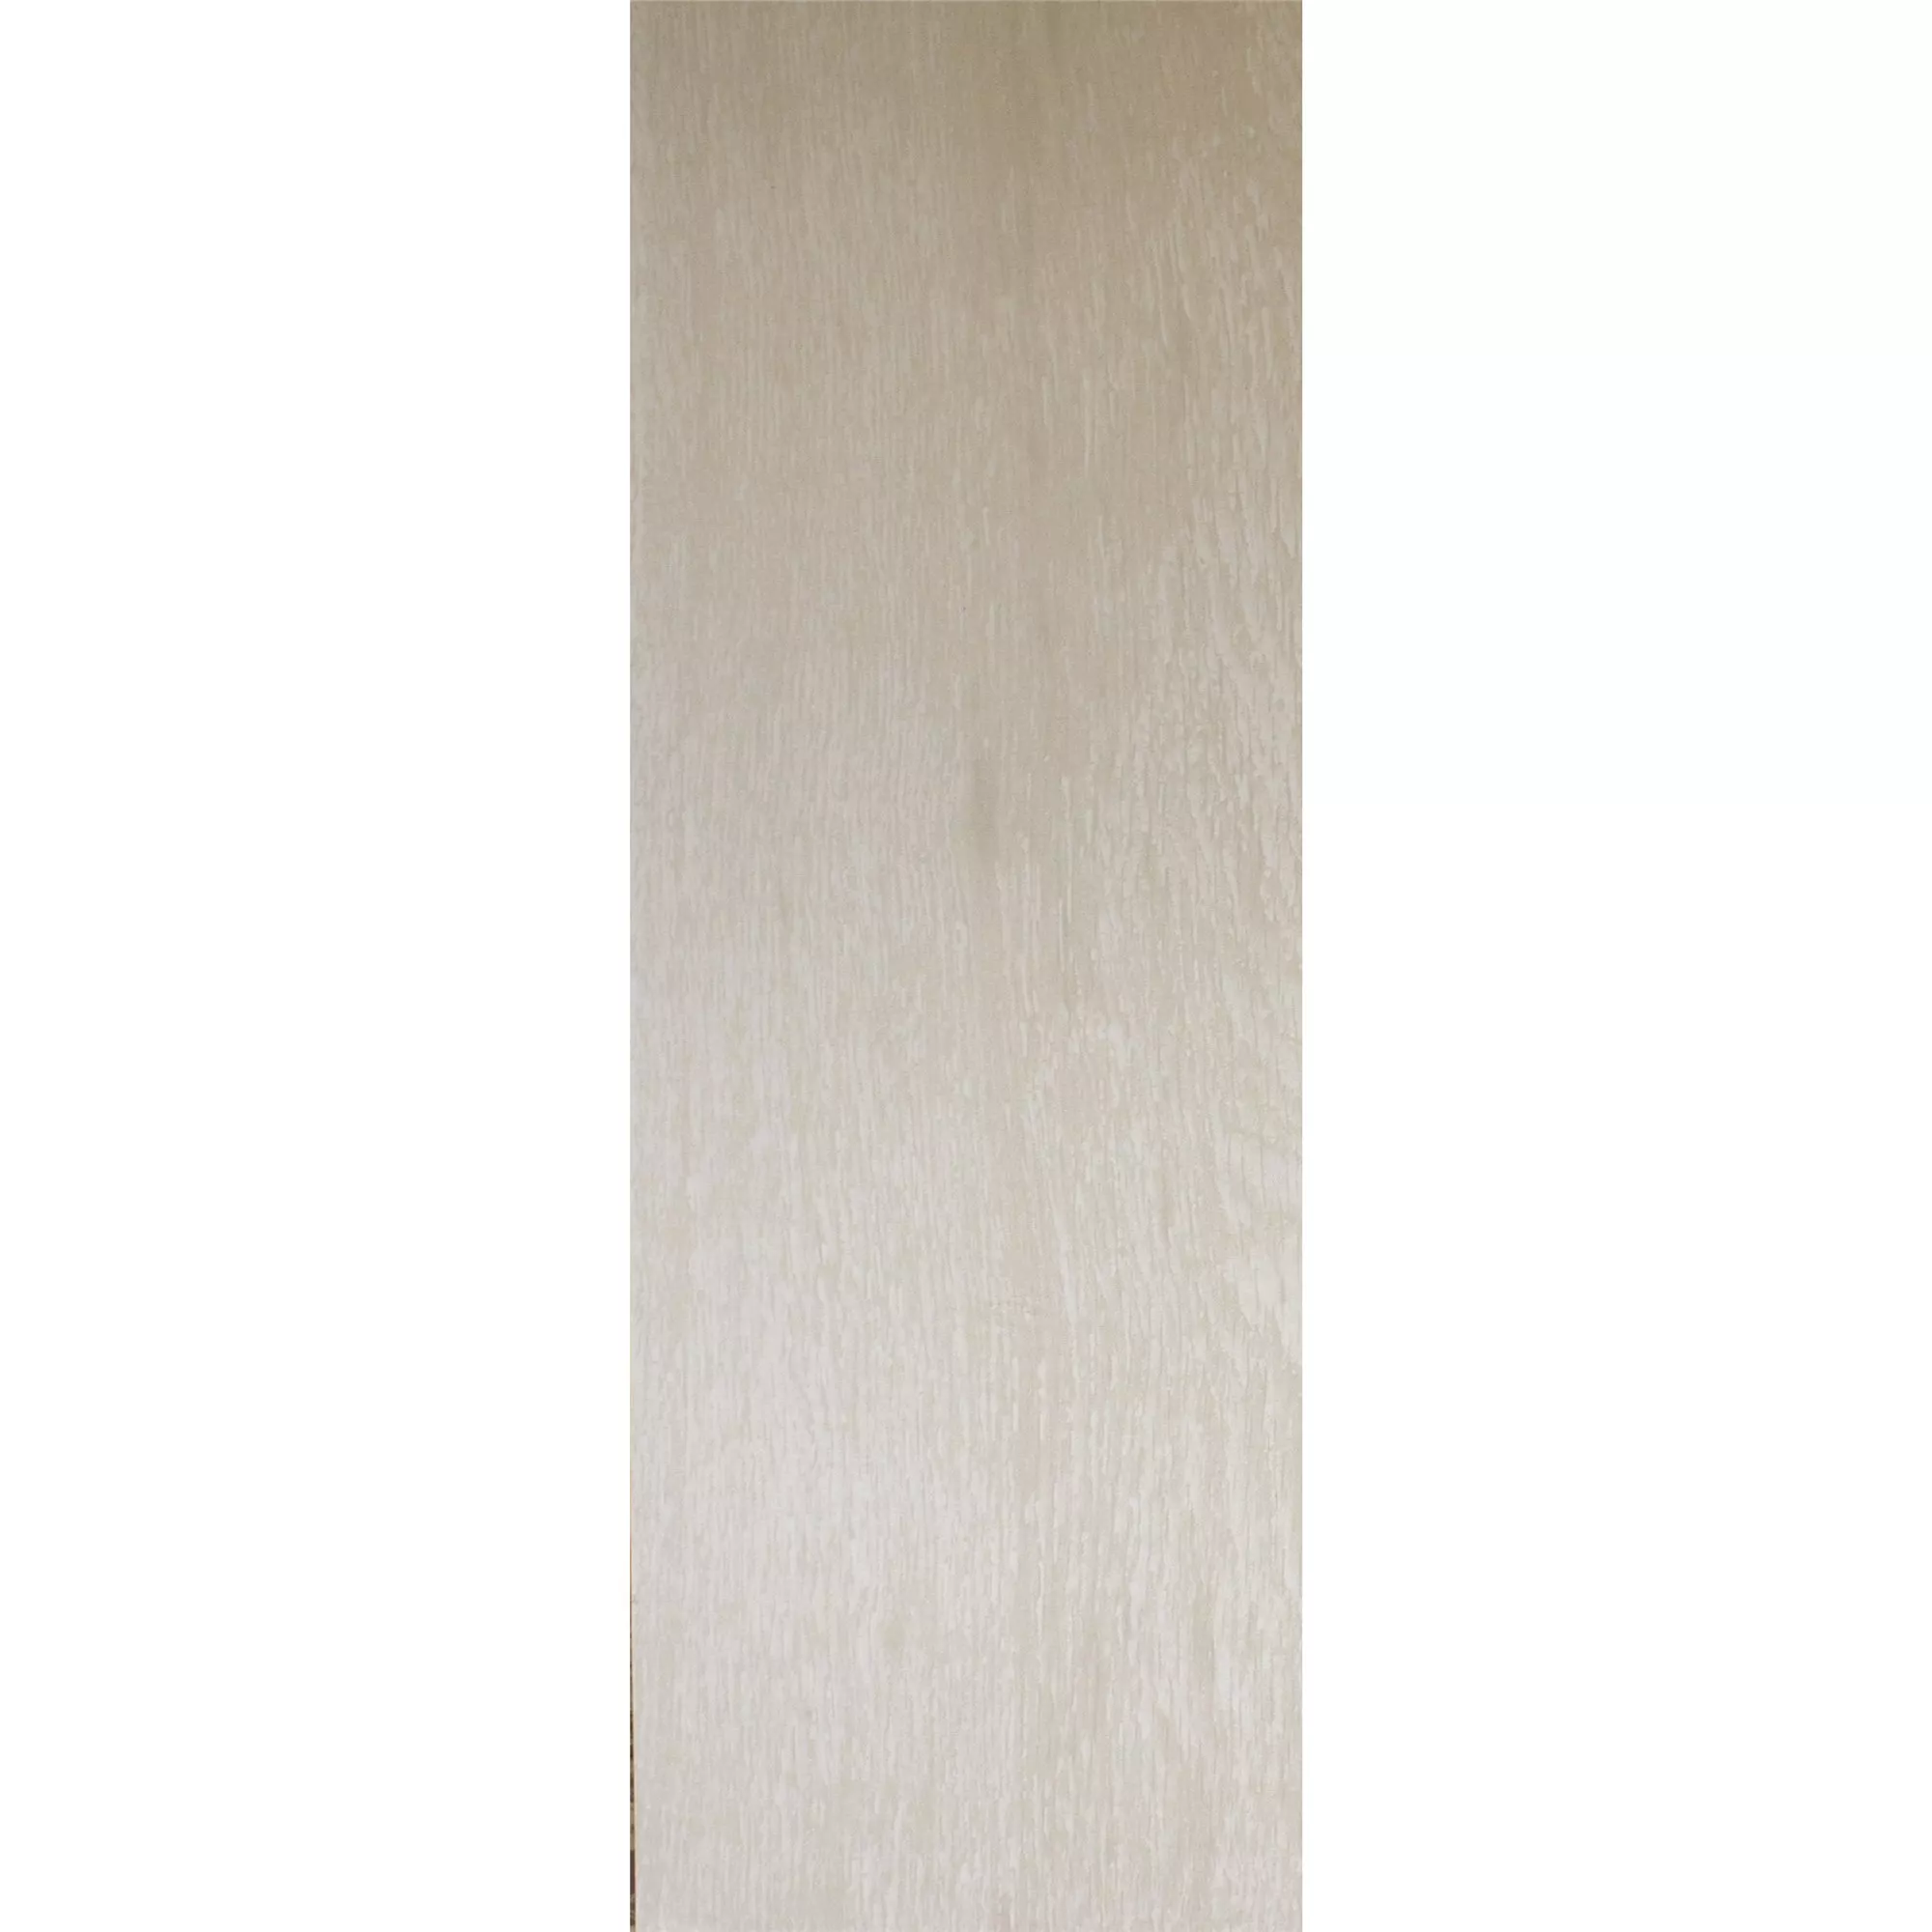 Gresie Herakles Aspect De Lemn White 20x120cm